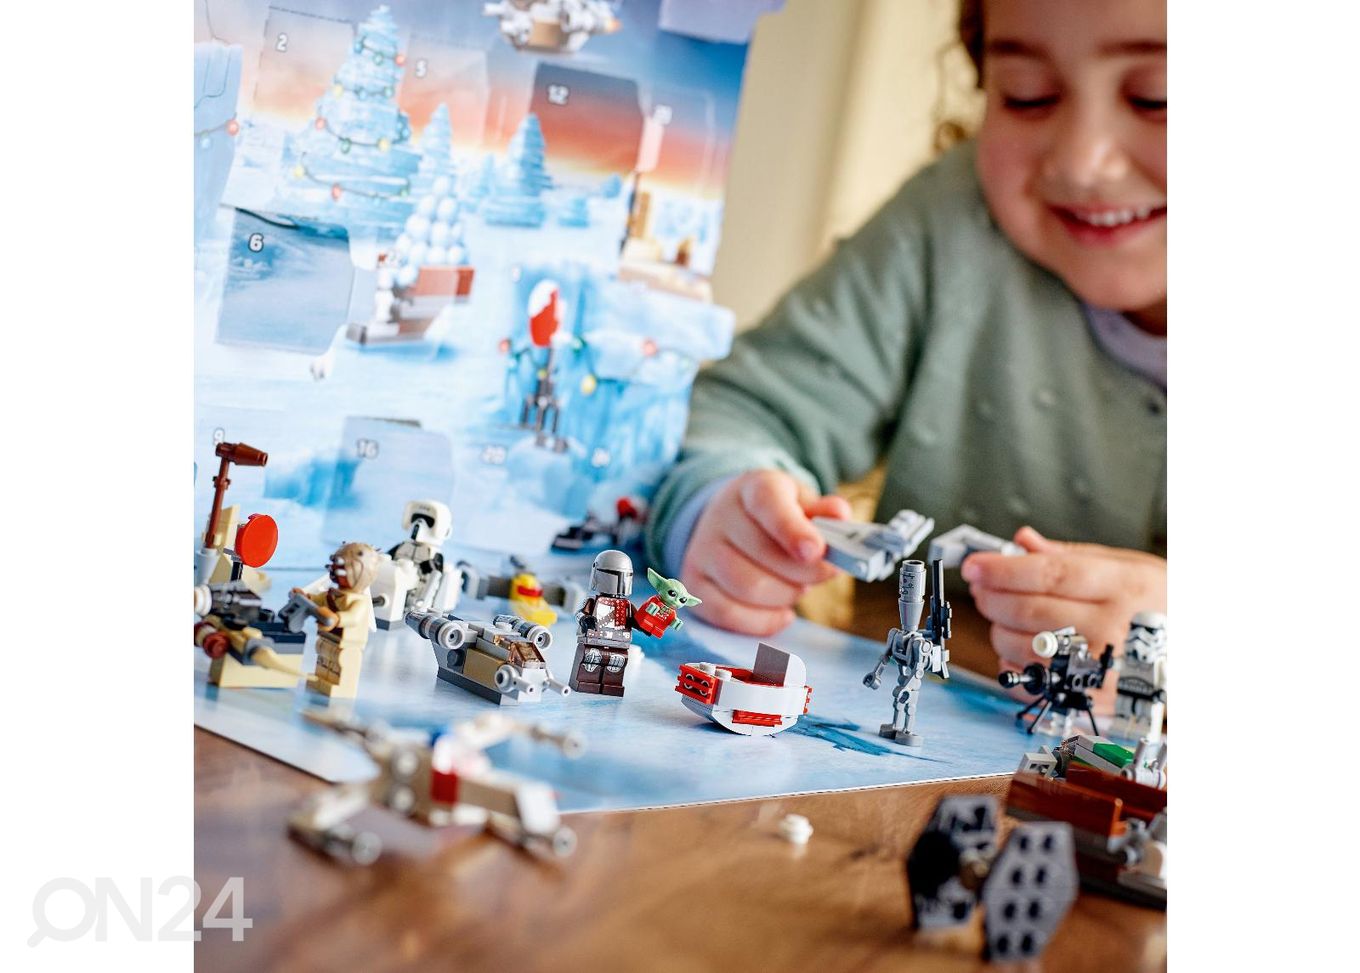 Рождественский календарь LEGO Star Wars увеличить